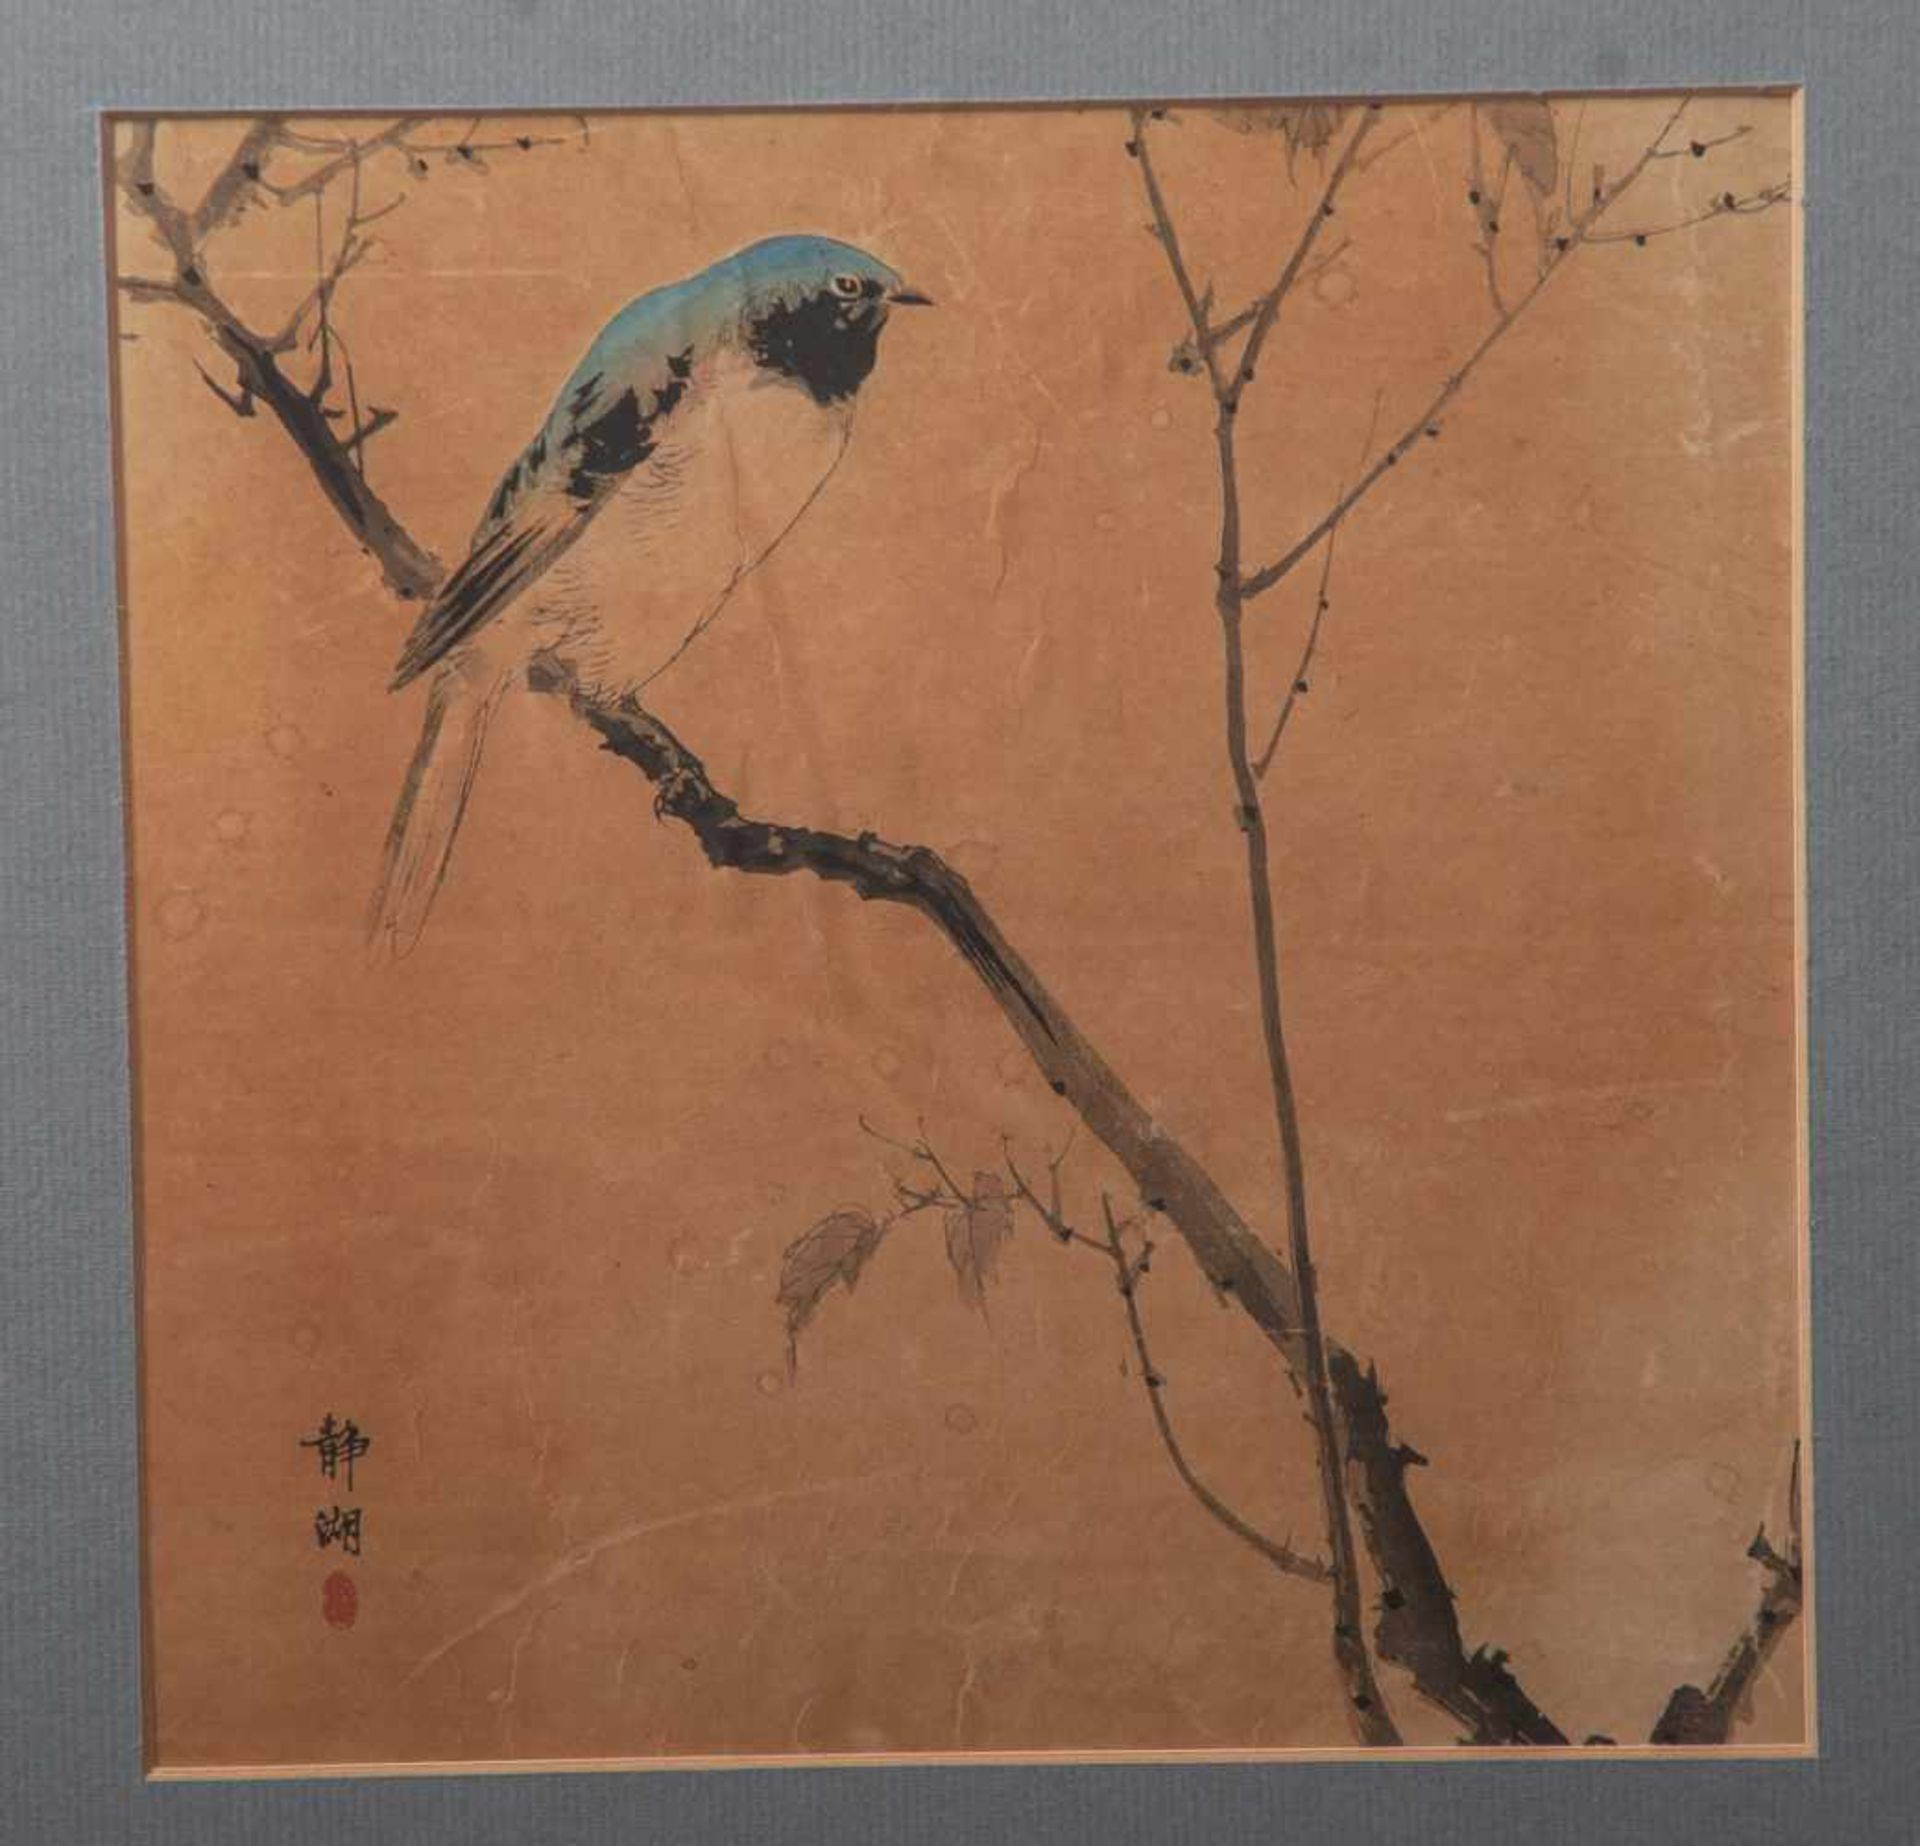 Feine Tuschmalerei auf Papier (wohl China oder Japan, wohl 19. Jahrhundert), Darstellungeiner